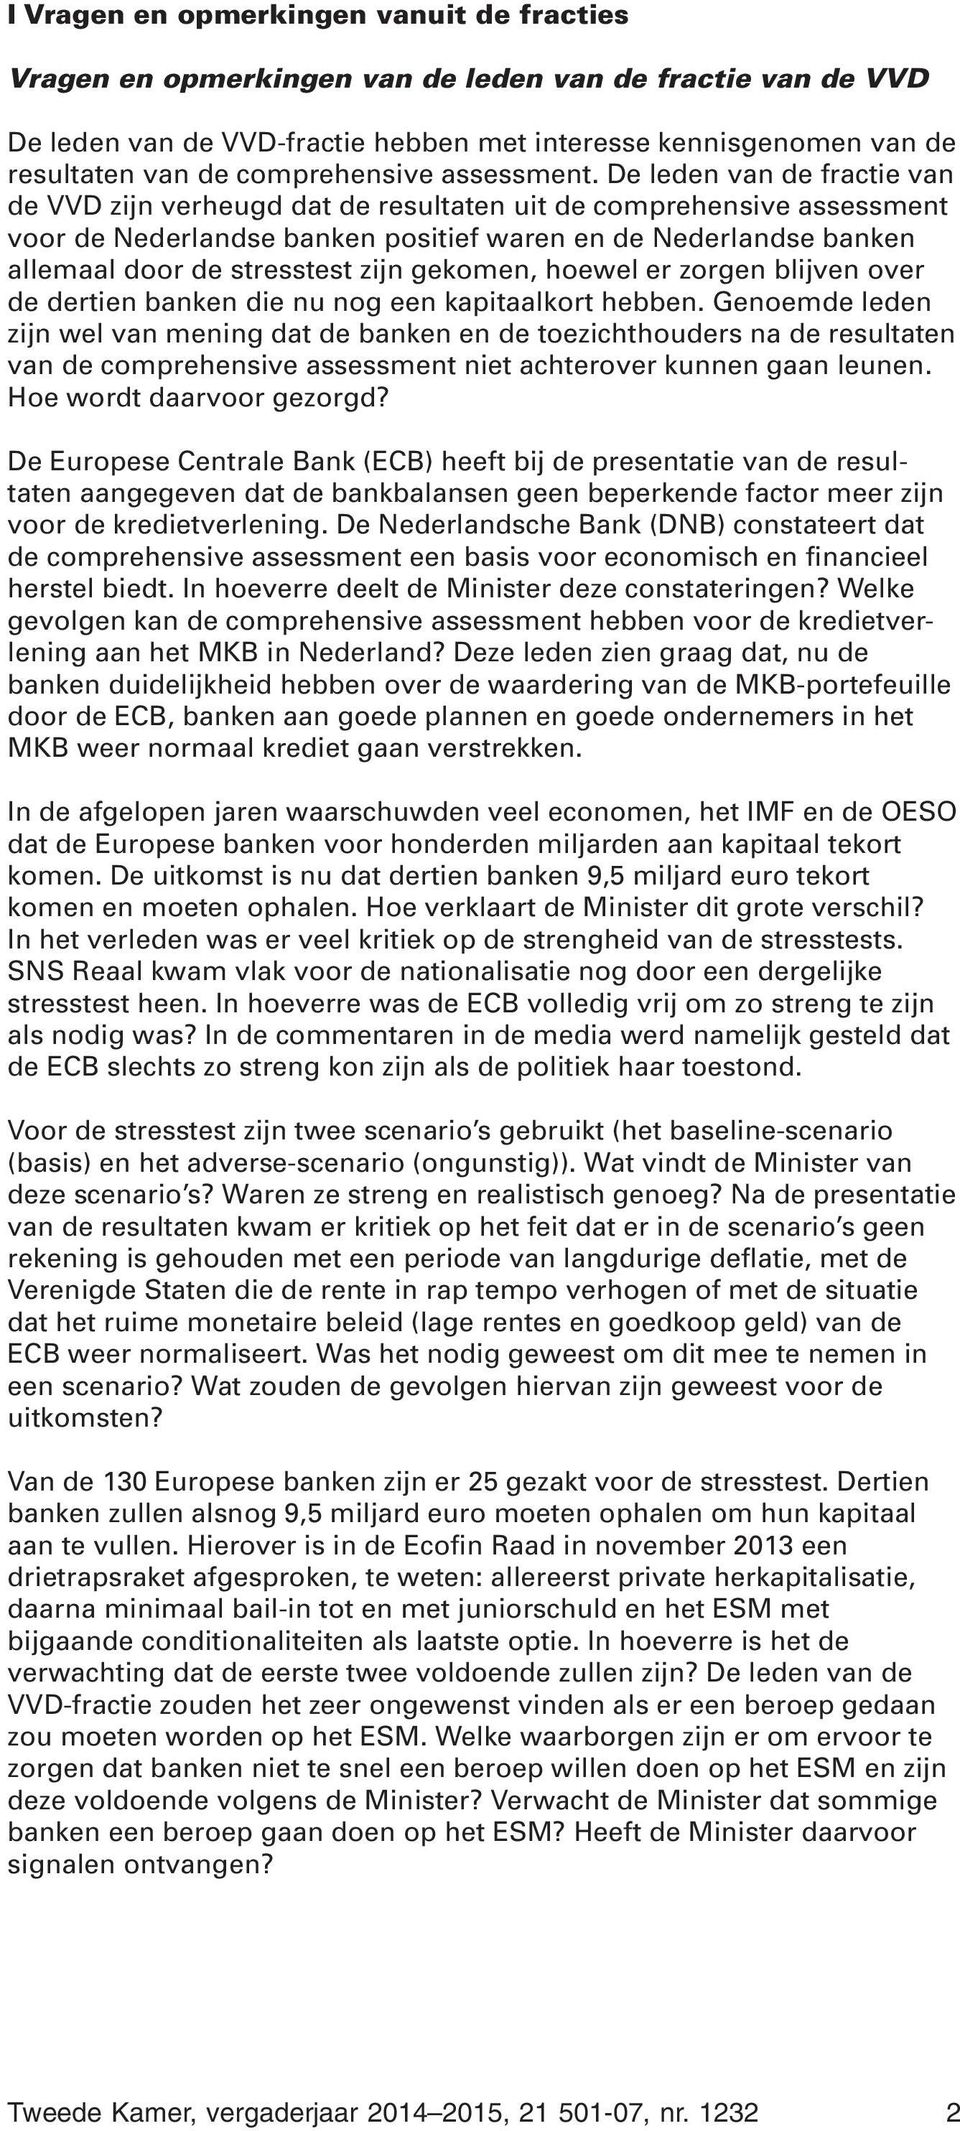 De leden van de fractie van de VVD zijn verheugd dat de resultaten uit de comprehensive assessment voor de Nederlandse banken positief waren en de Nederlandse banken allemaal door de stresstest zijn